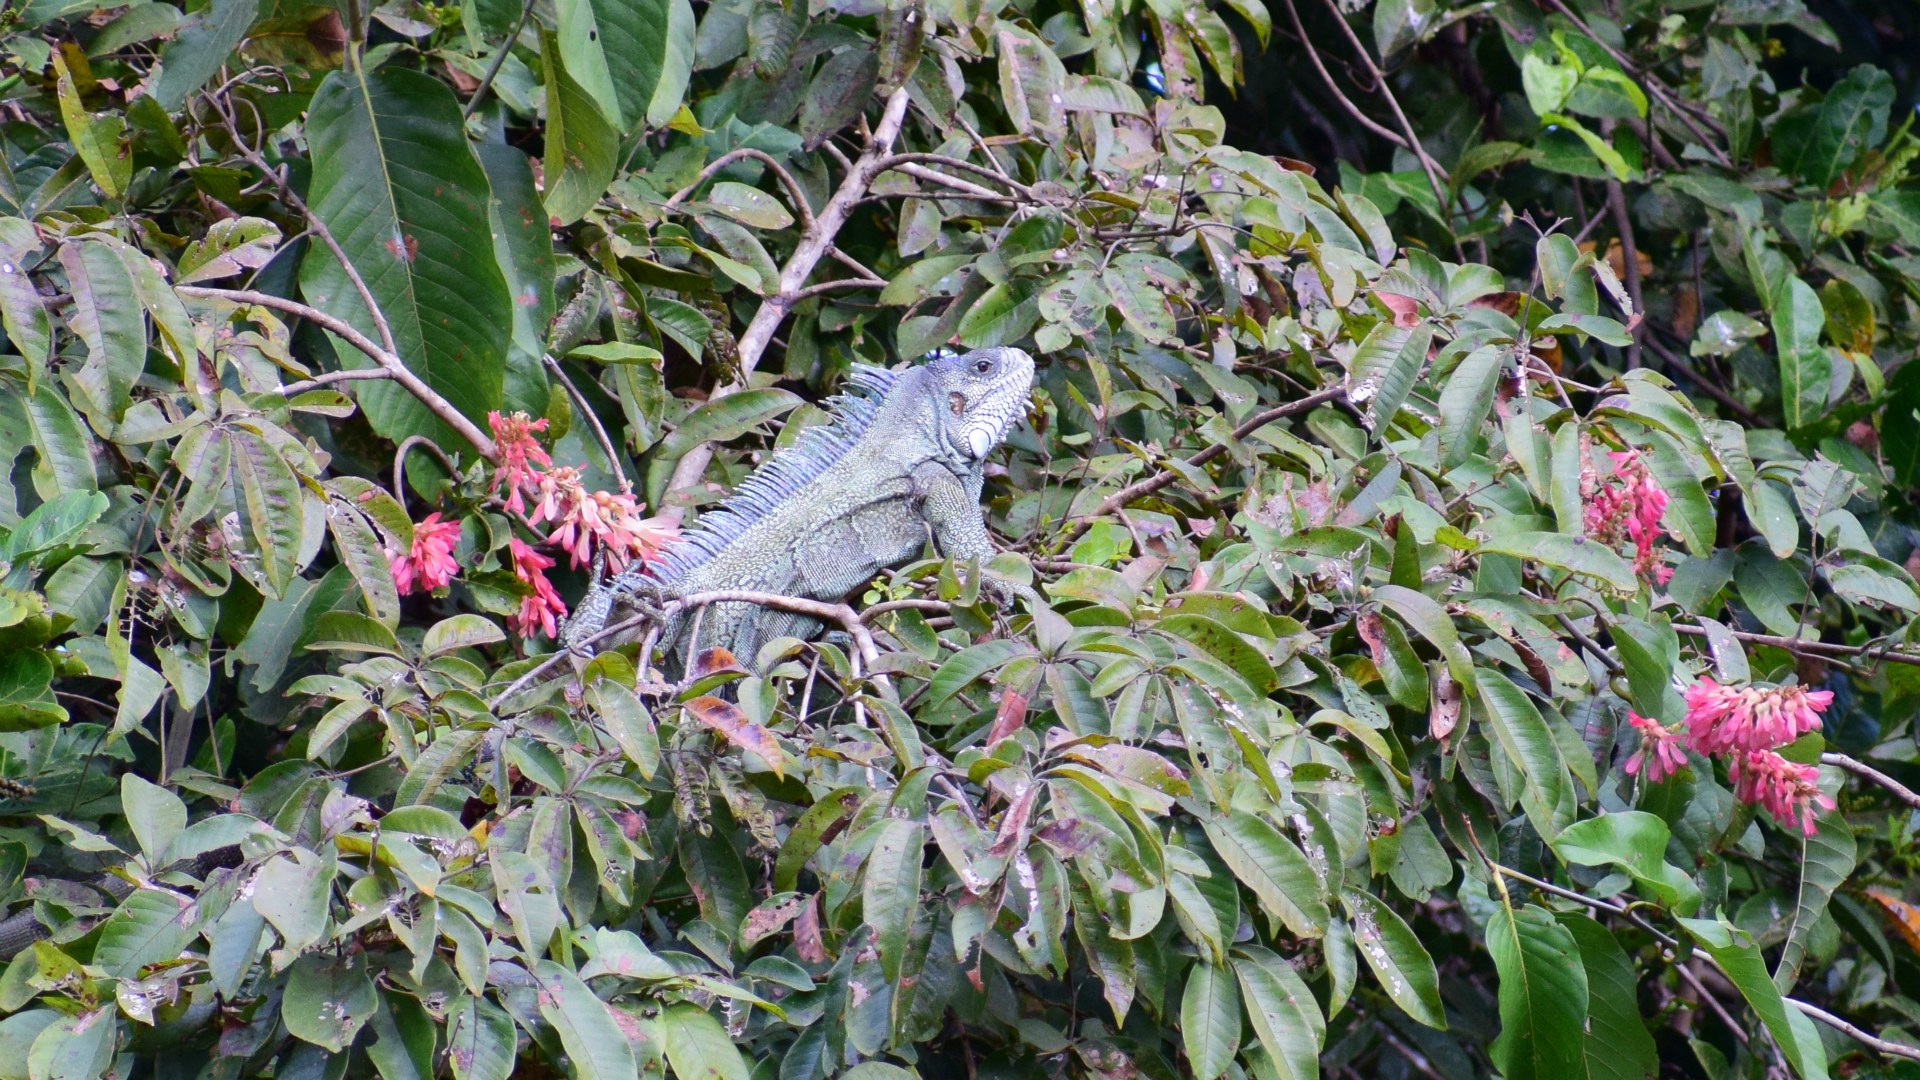 Green Iguana, Northern Pantanal